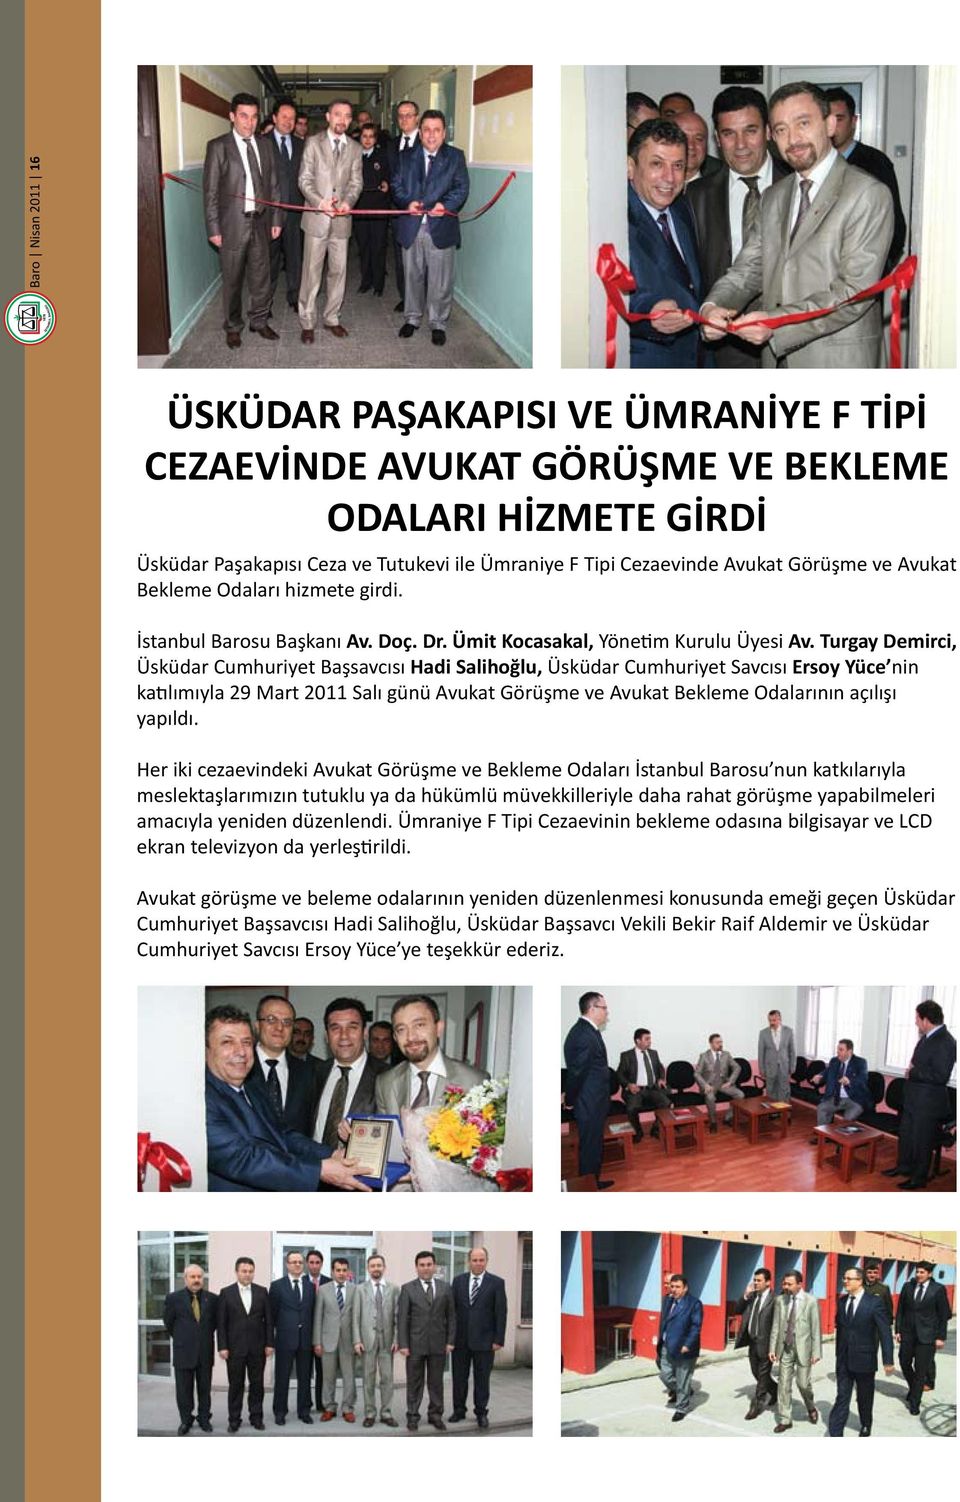 Turgay Demirci, Üsküdar Cumhuriyet Başsavcısı Hadi Salihoğlu, Üsküdar Cumhuriyet Savcısı Ersoy Yüce nin katılımıyla 29 Mart 2011 Salı günü Avukat Görüşme ve Avukat Bekleme Odalarının açılışı yapıldı.